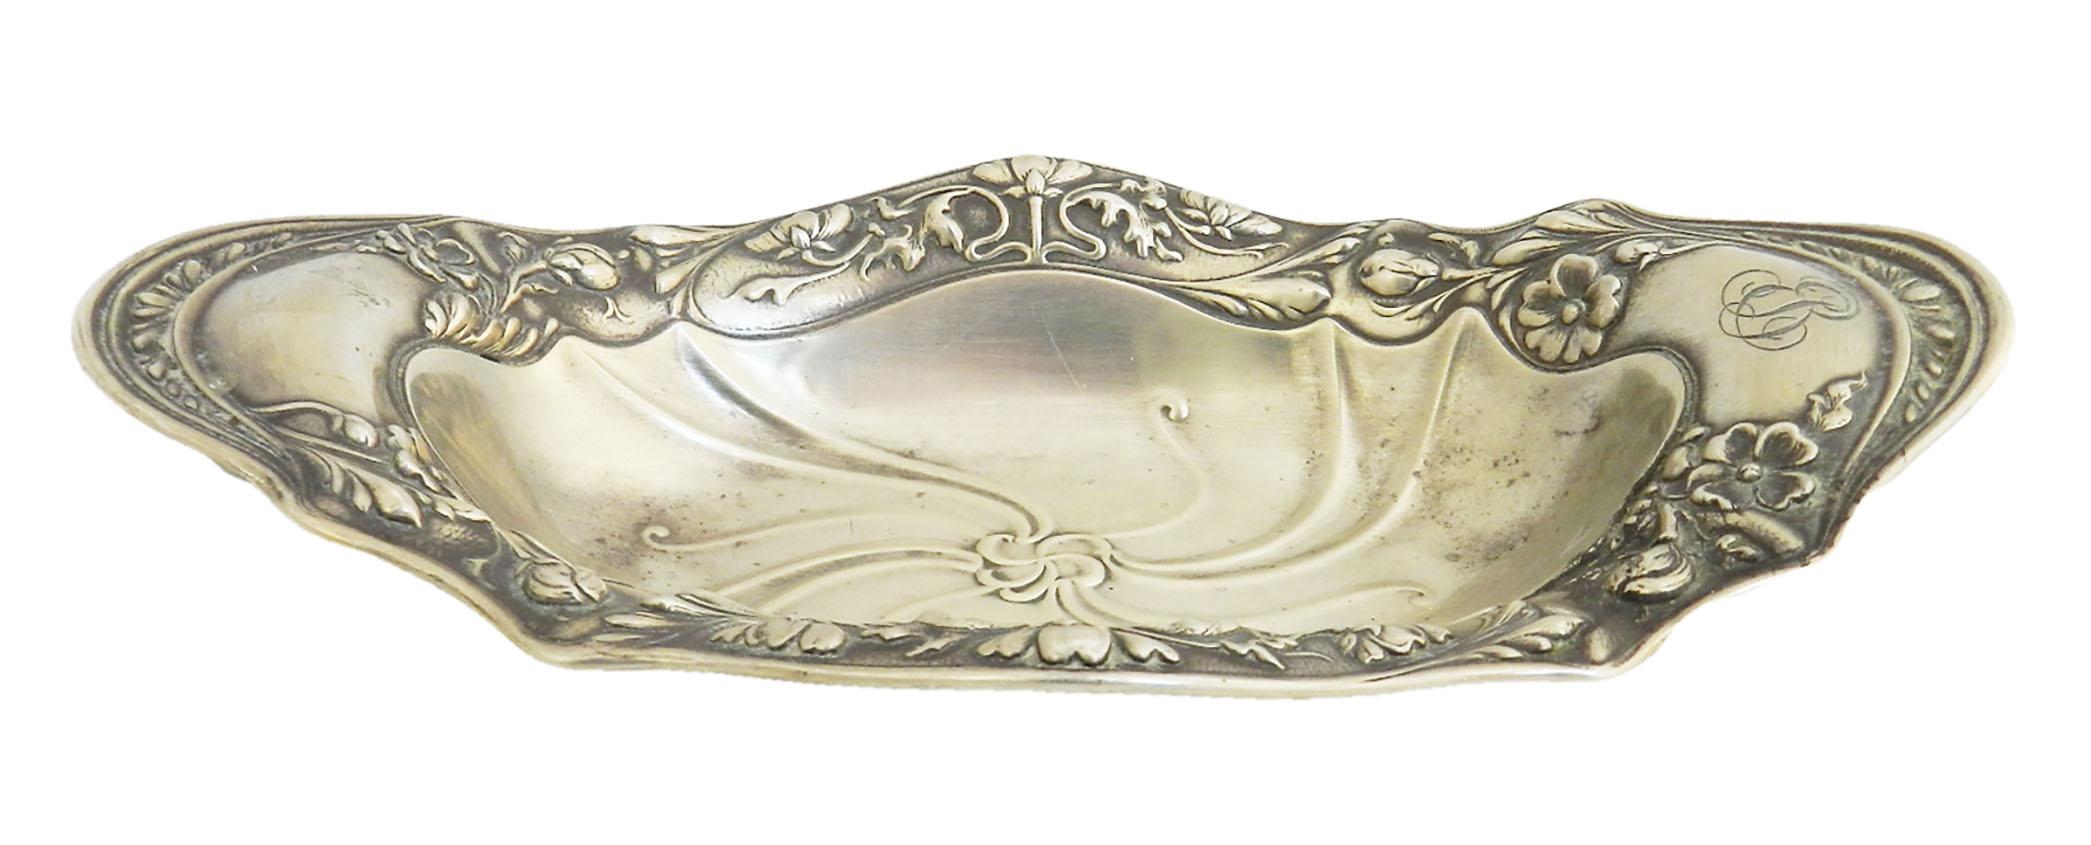 Gorham Silber Jugendstil Schale
USA Sterlingsilber
Gepunzt
Stiftschale
Nuss- oder Bonbonschale
Guter antiker Zustand 
Höhe = 4,5 cm (1,8